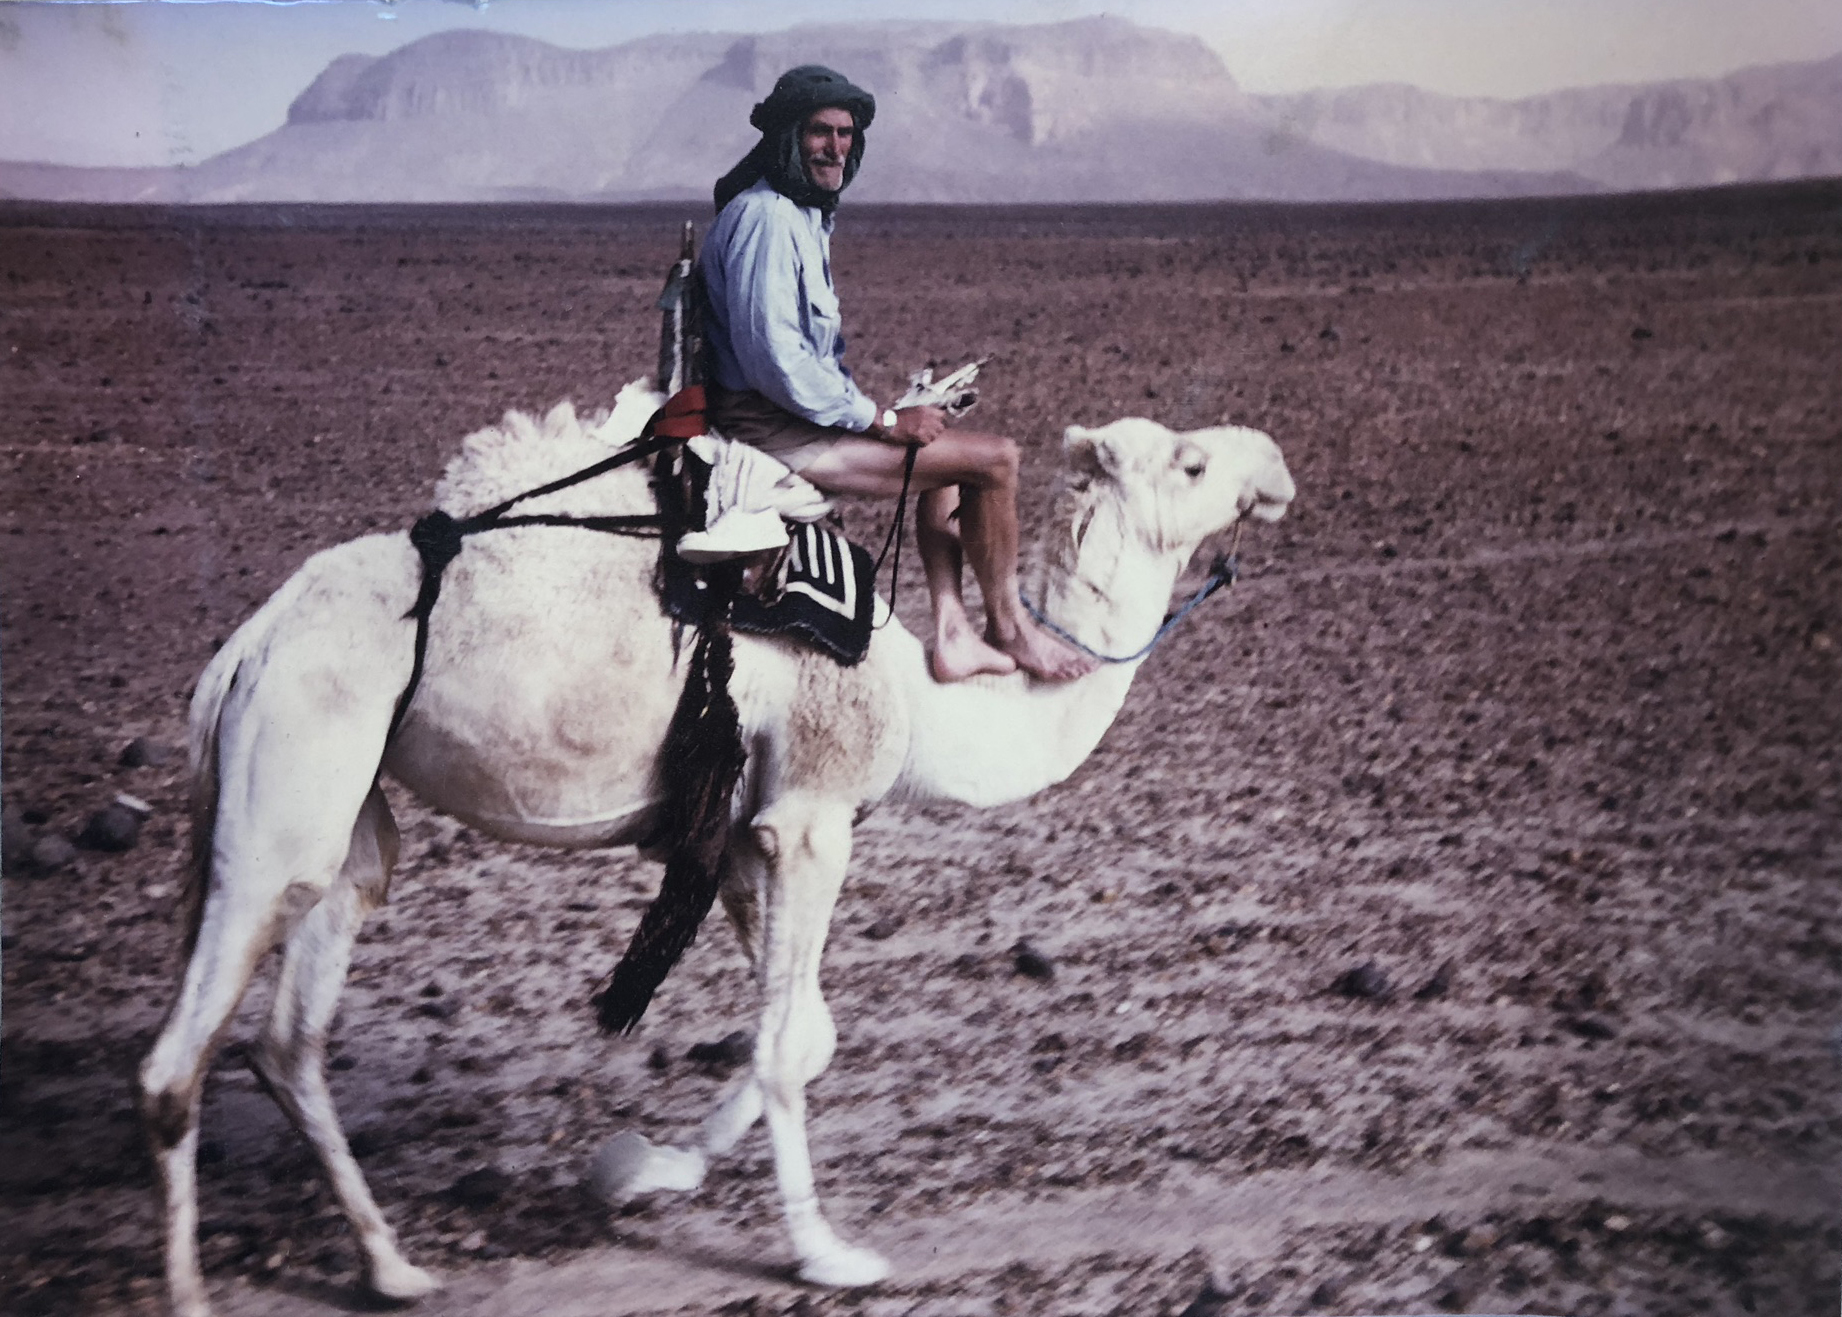 Dan on camel trek